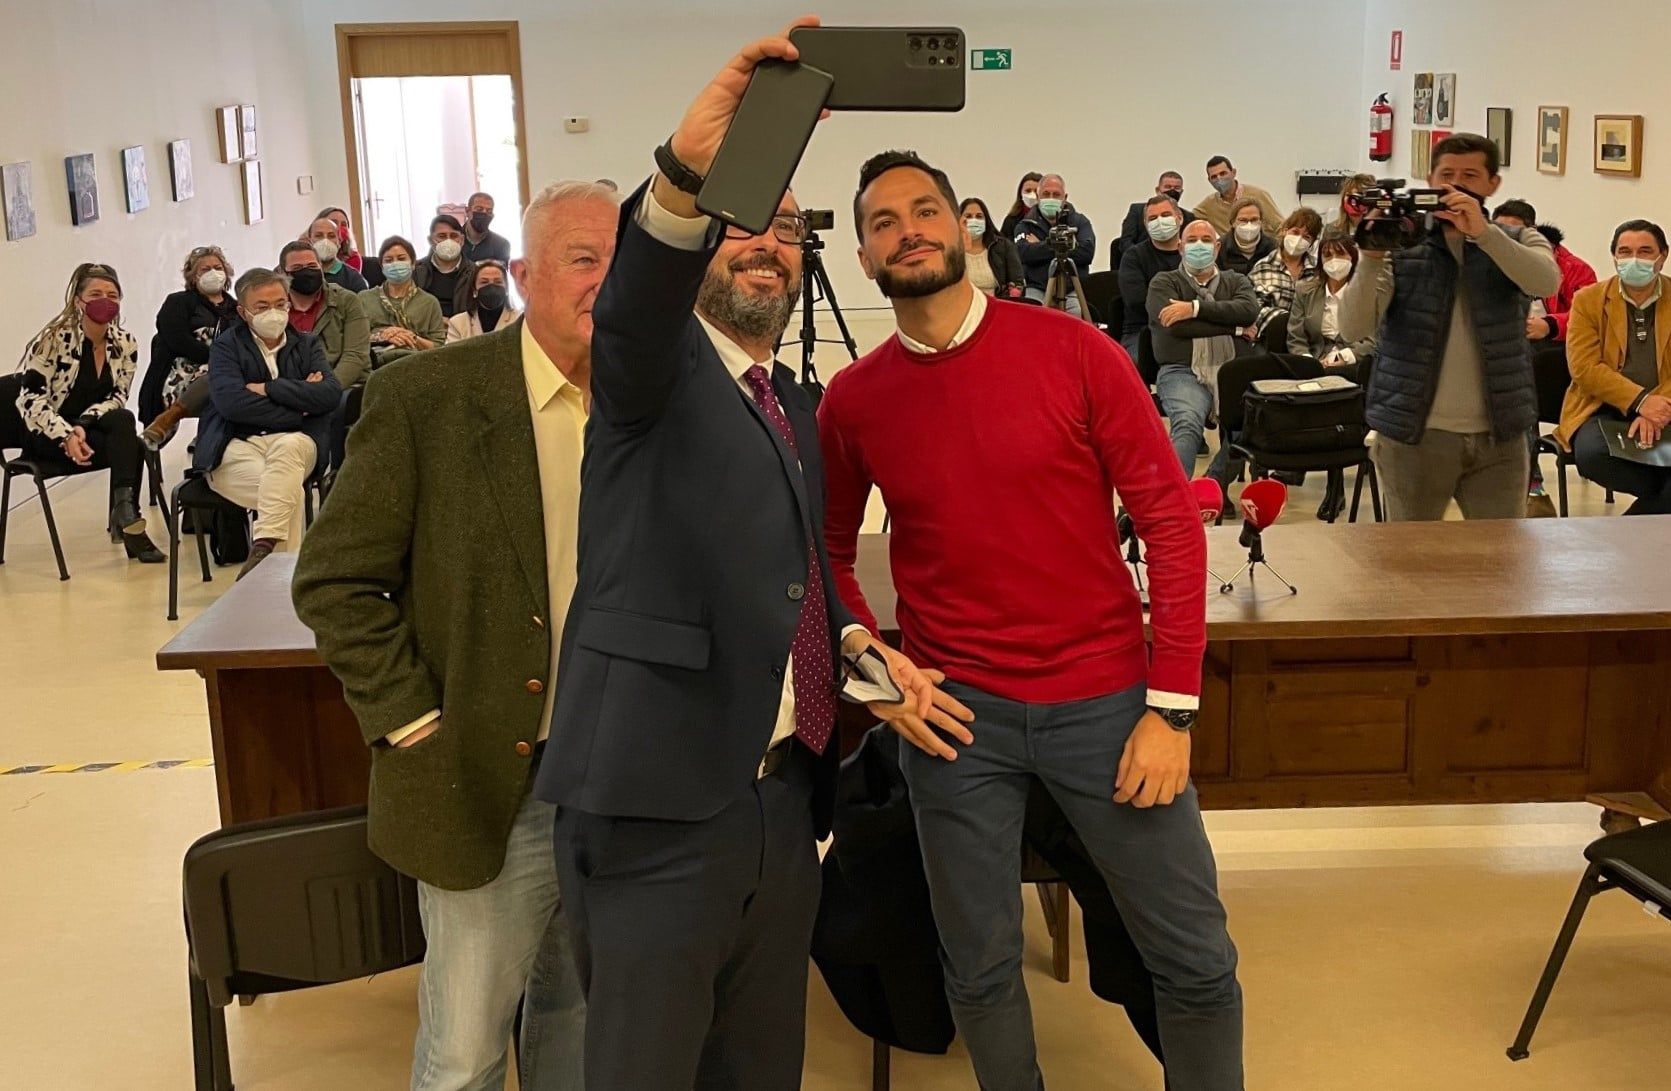 El alcalde de La Línea, Juan Franco, hace un 'selfie' en la despedida de Mario Fernández, a su derecha en la imagen.